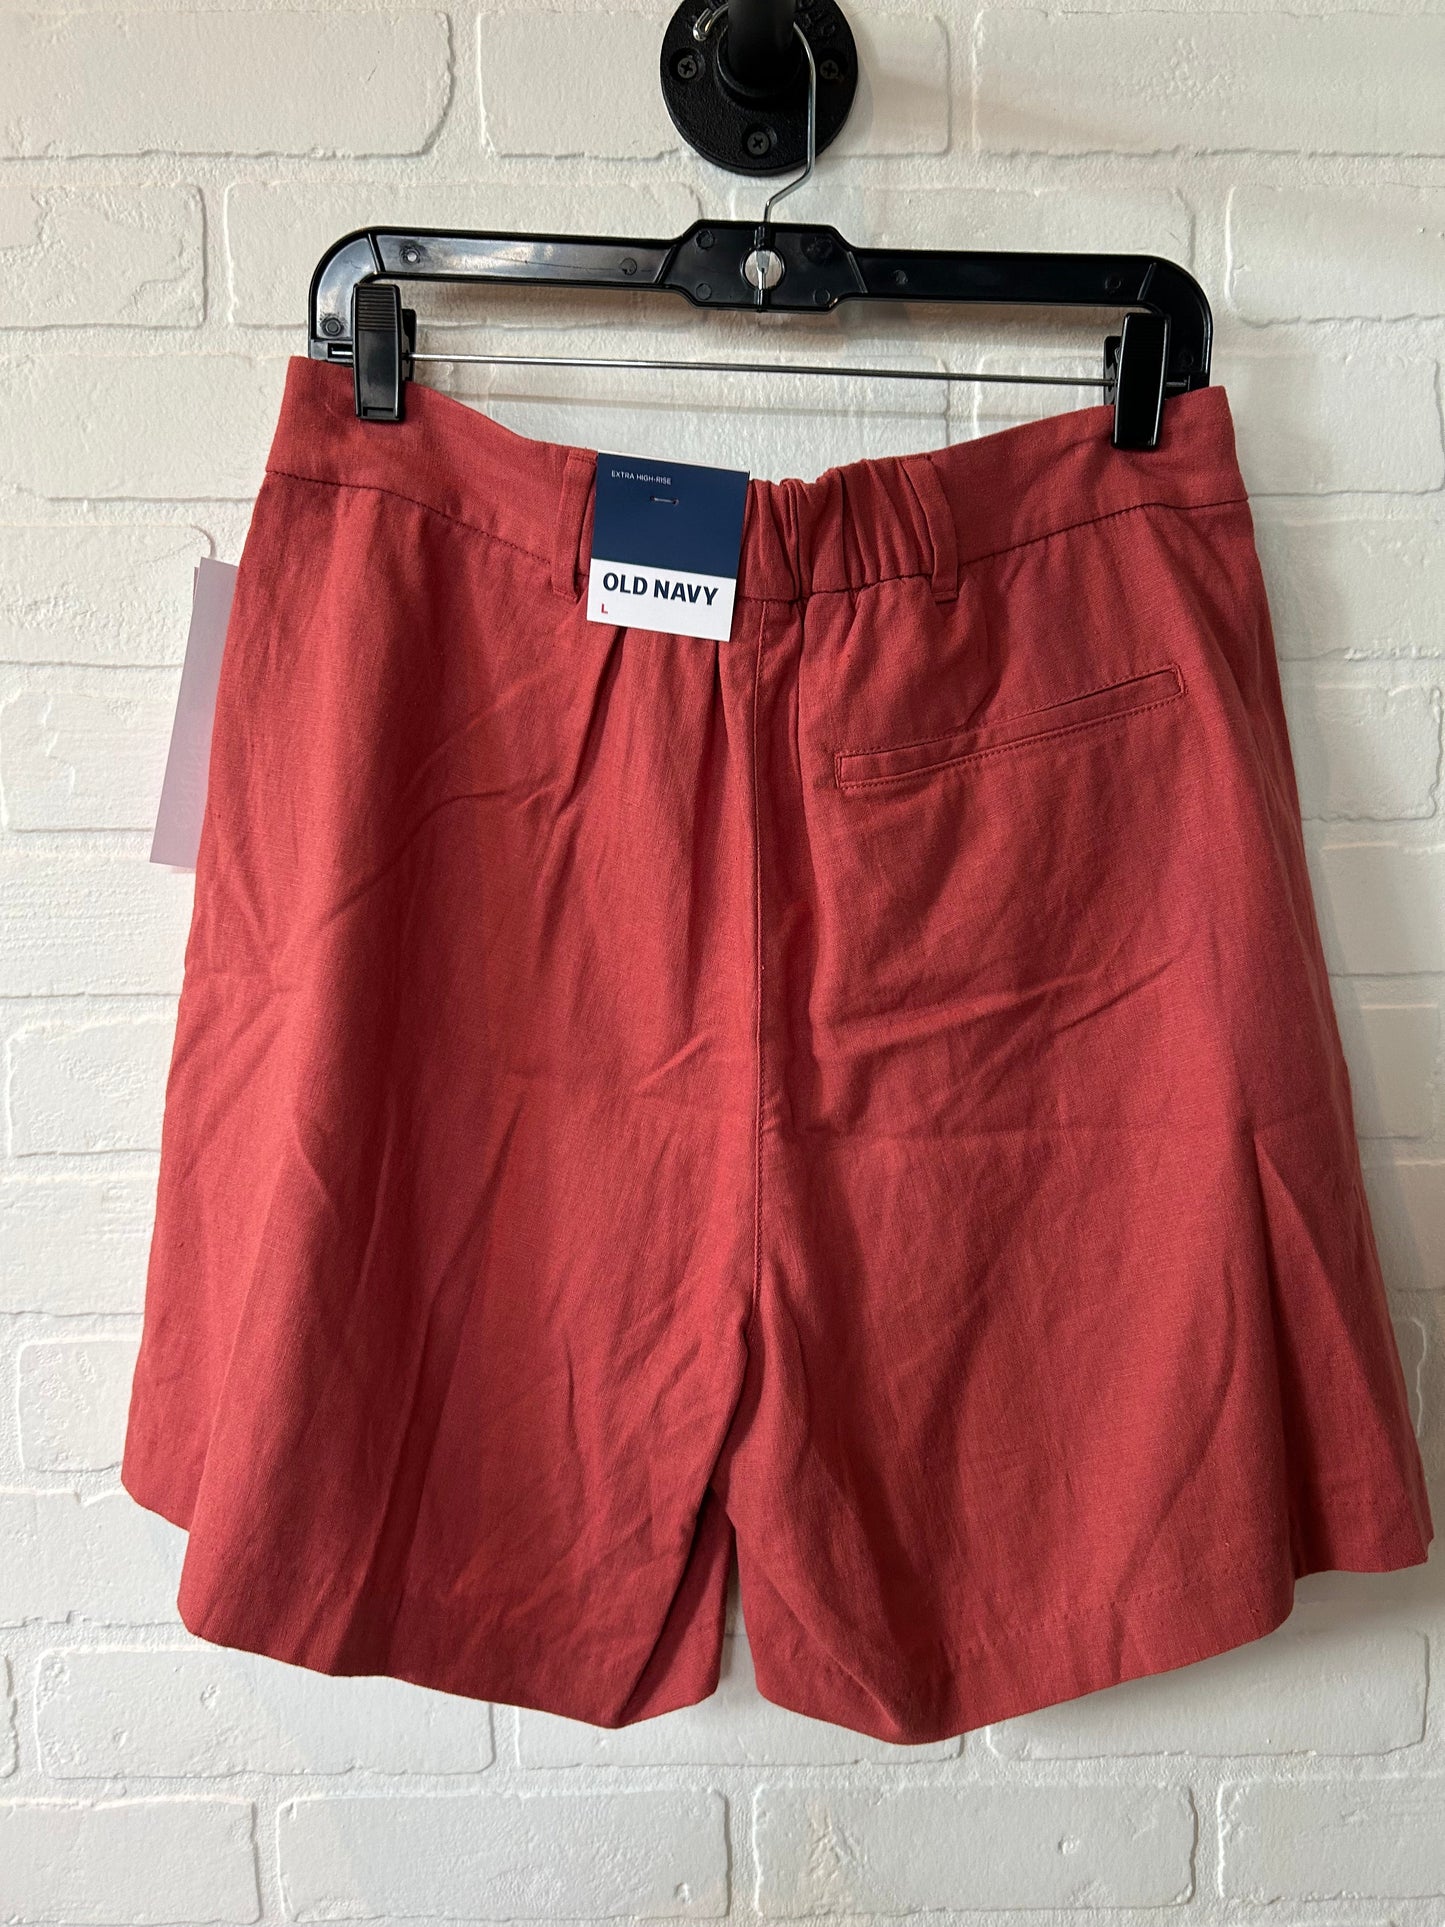 Orange Shorts Old Navy, Size 12